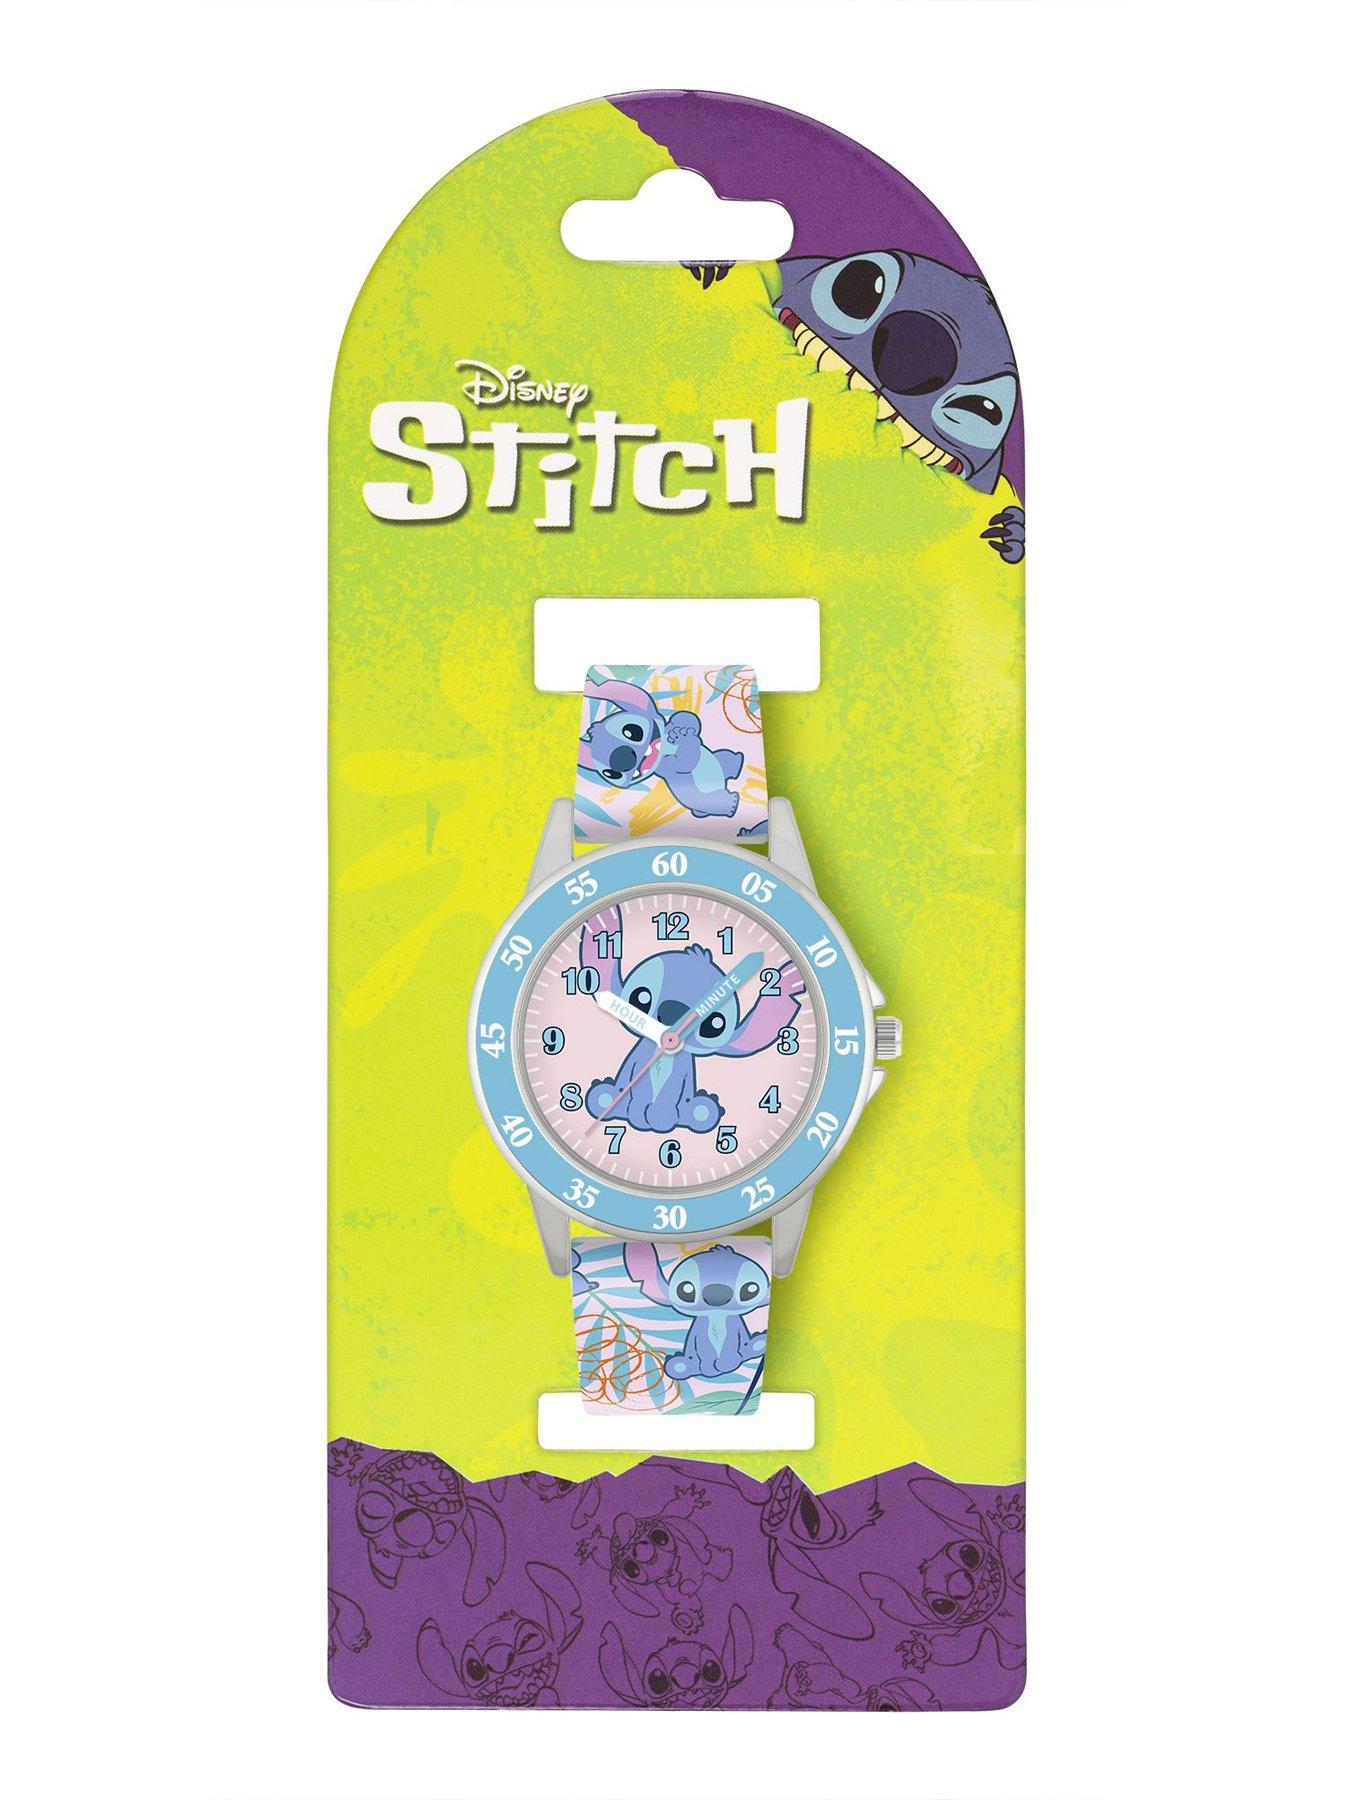 Stitch Watches Girls, Disney Stitch Watch